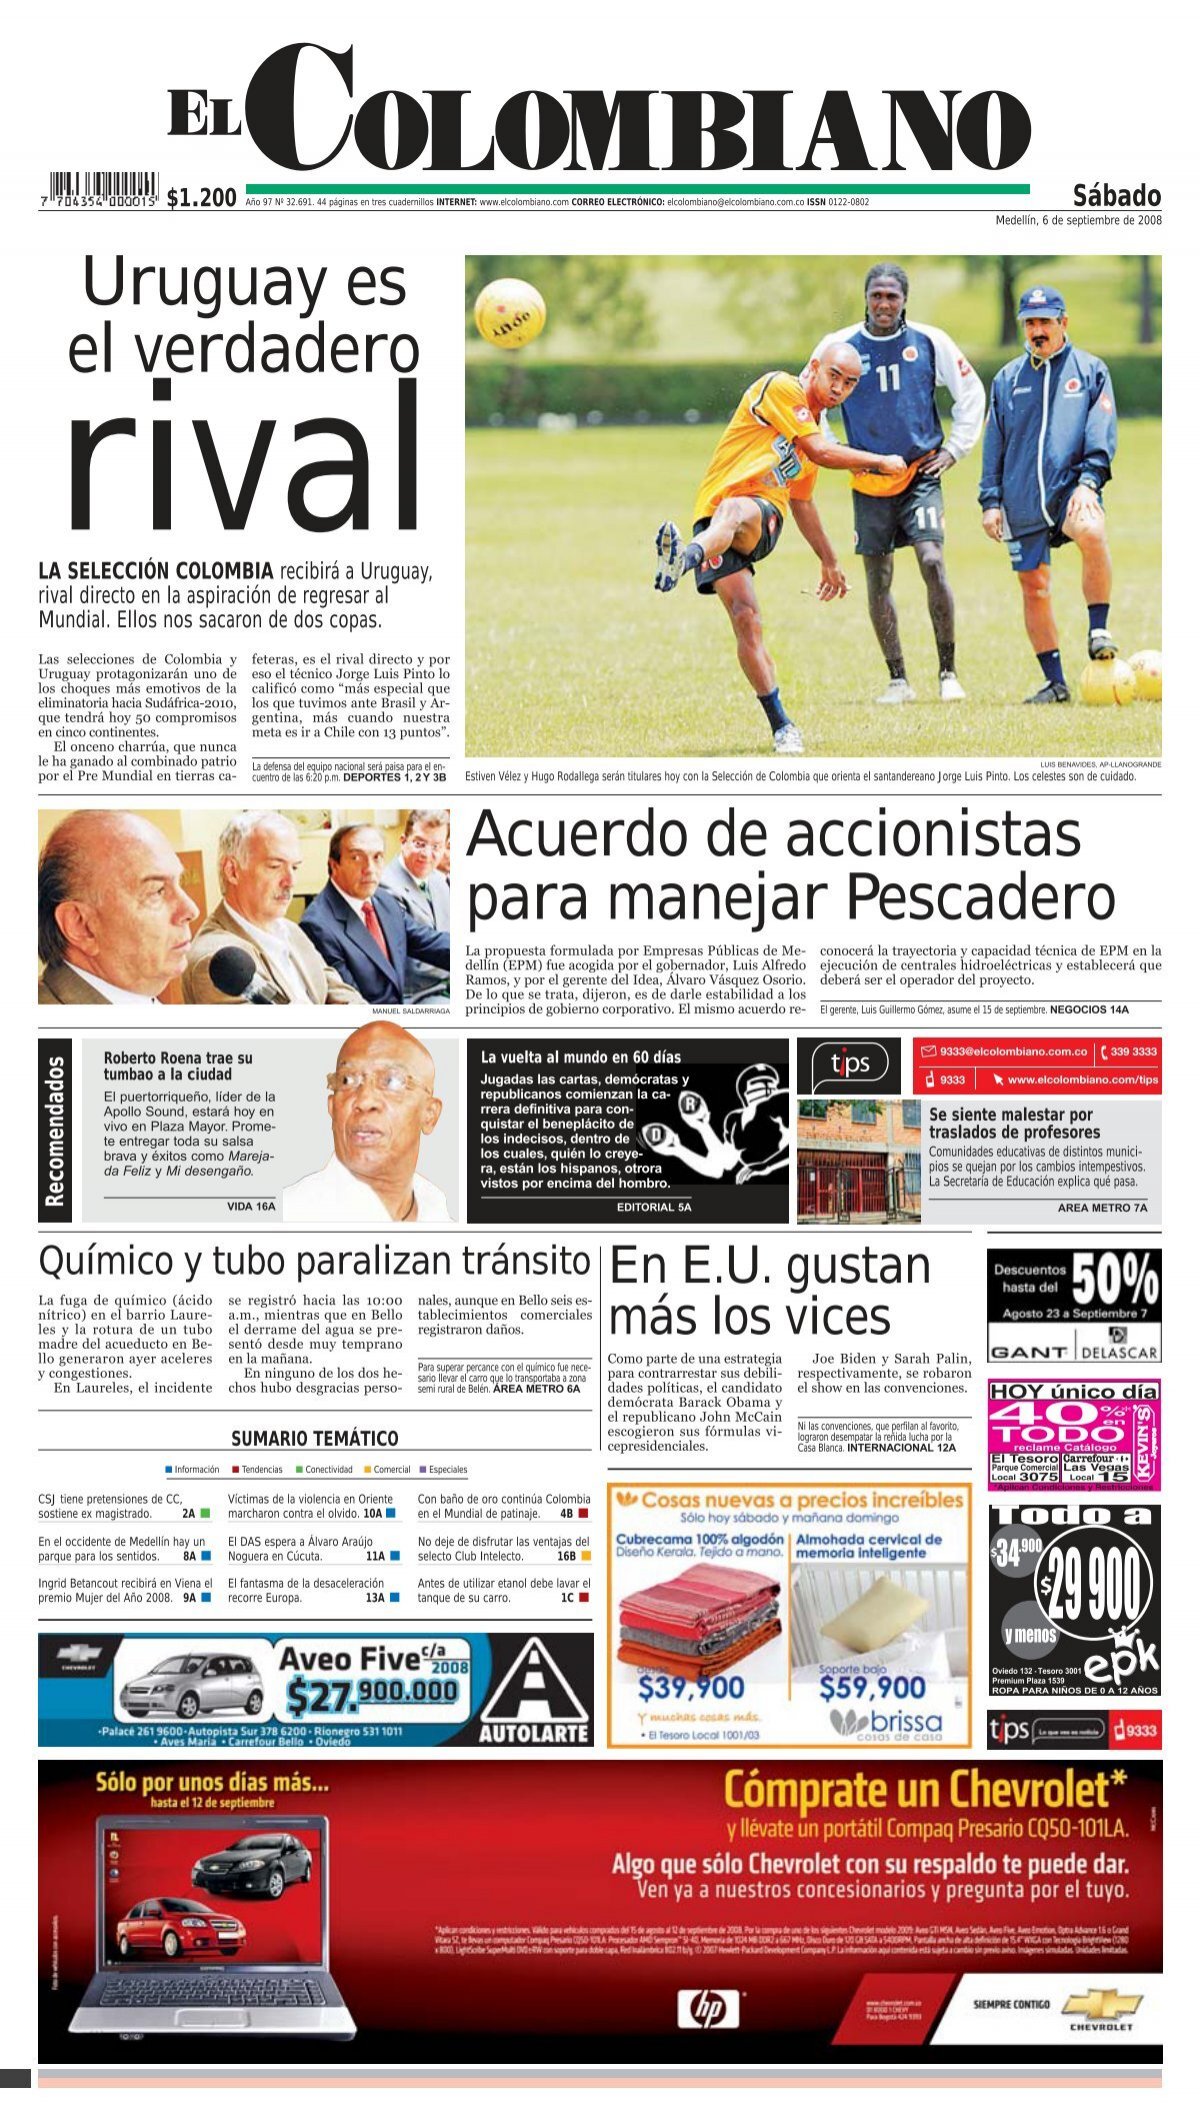 Uruguay baja del pedestal a la Argentina en eliminatorias para Mundial -  Los Angeles Times